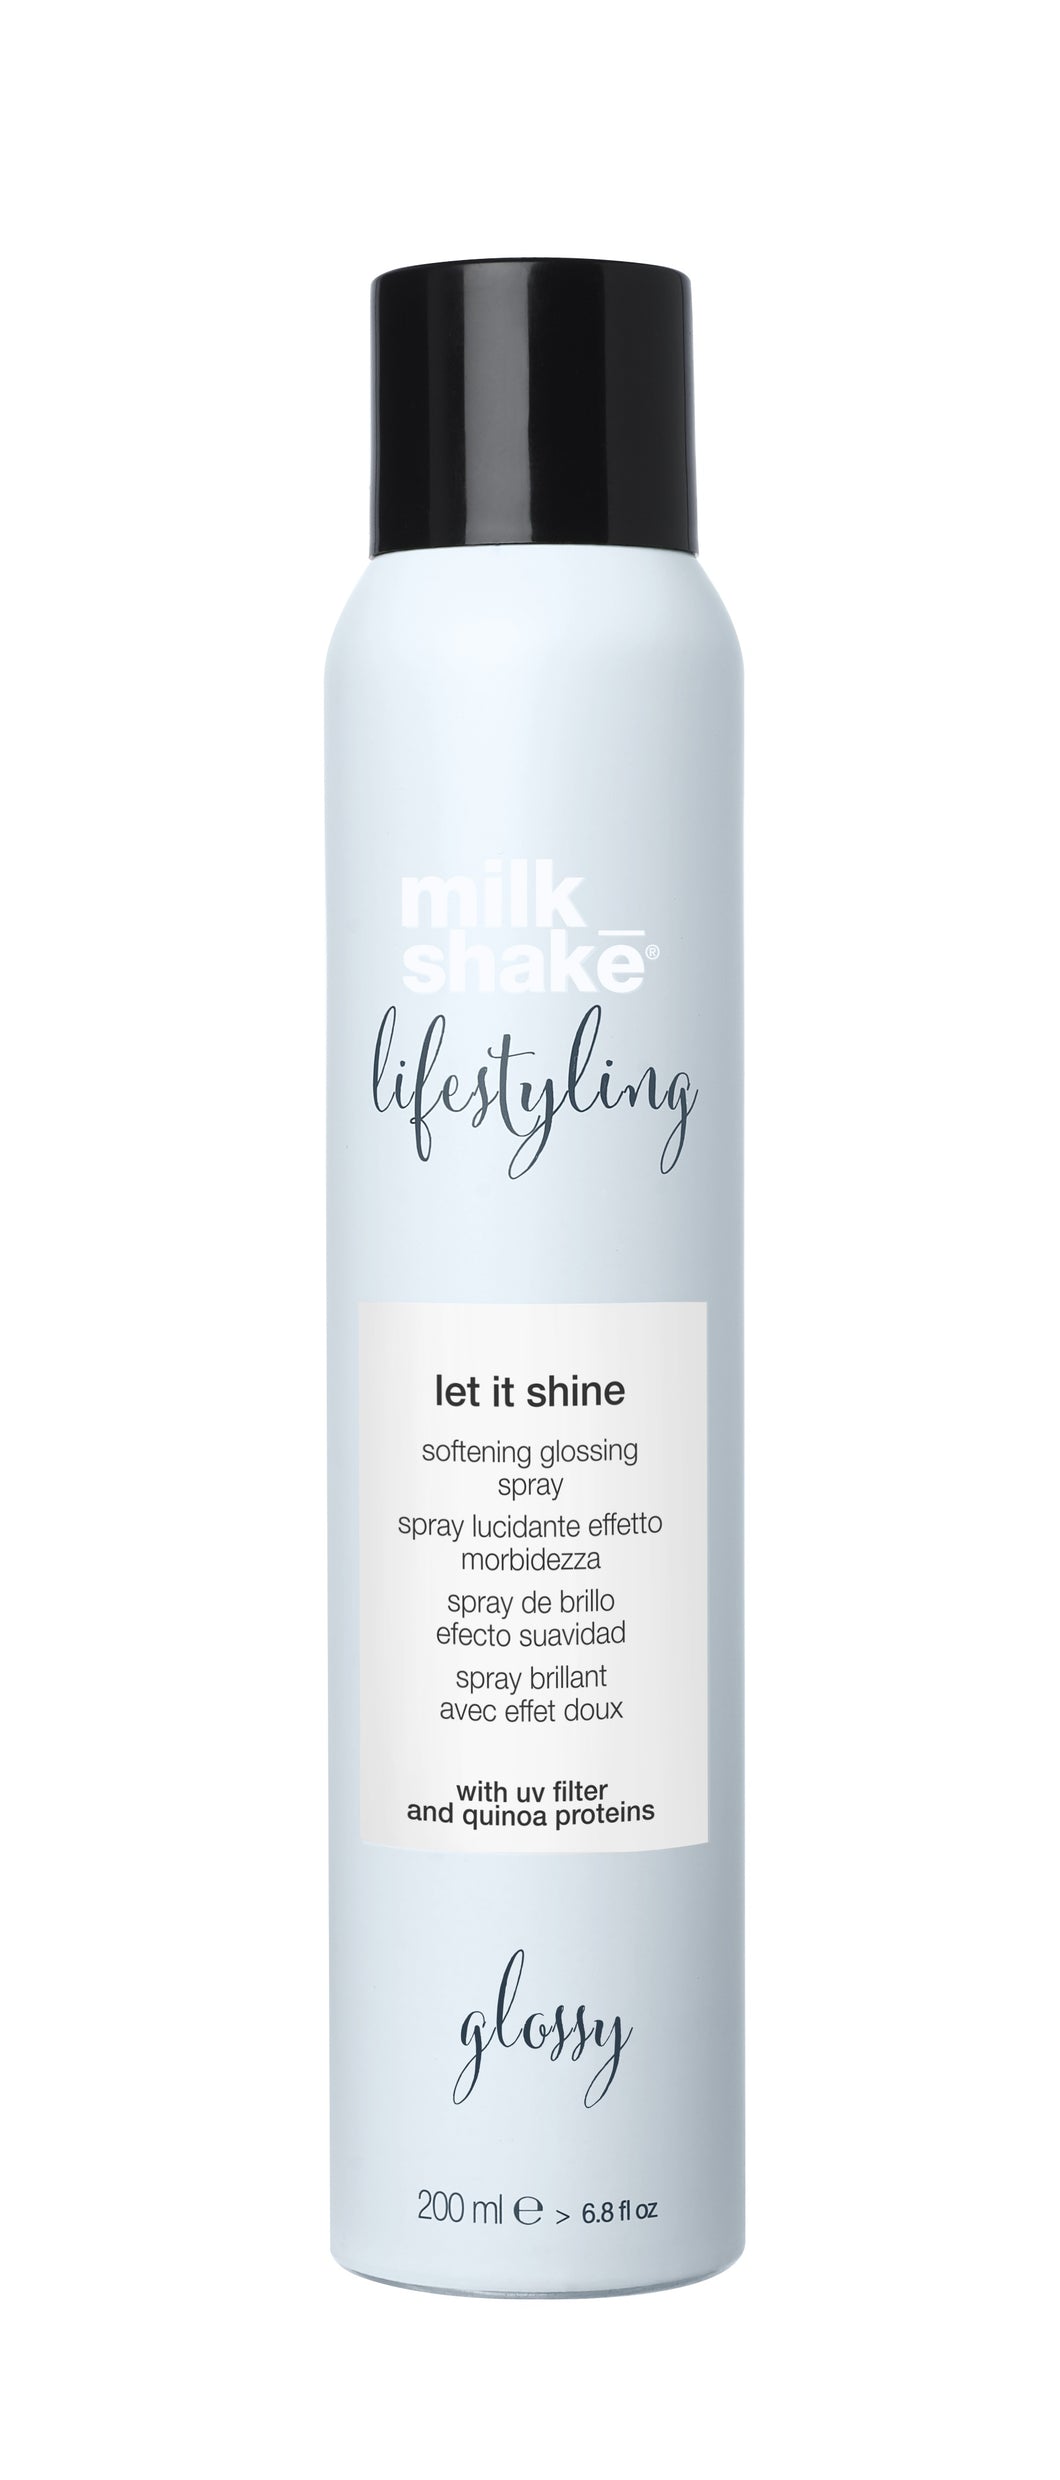 milk_shake let it shine product image